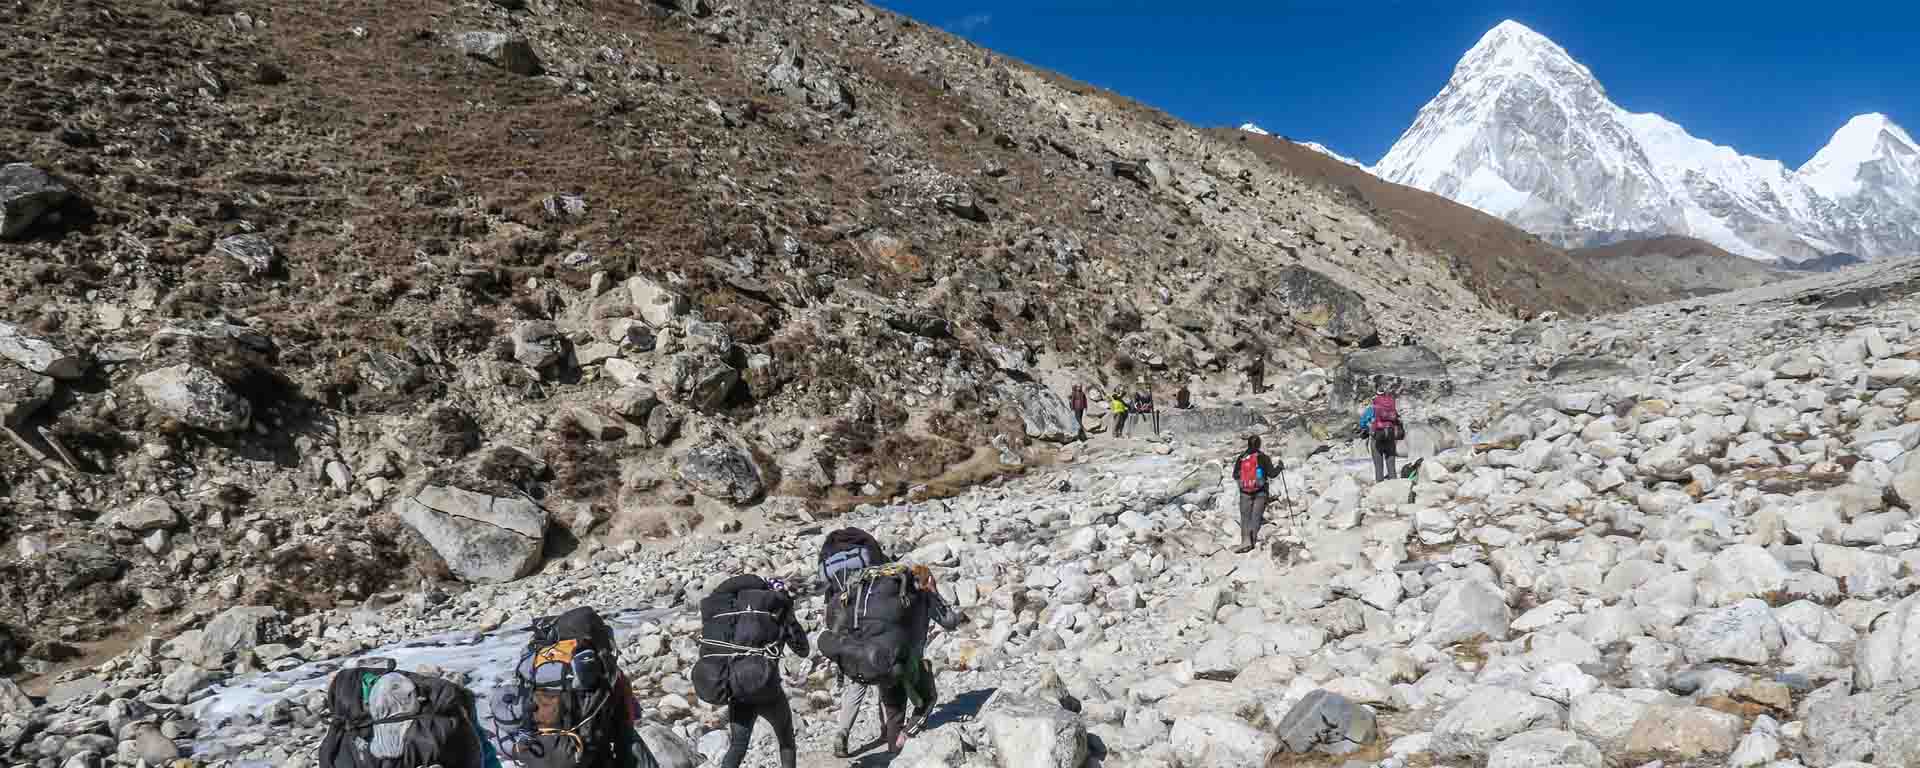 Mount Everest - Everest-basiskamp